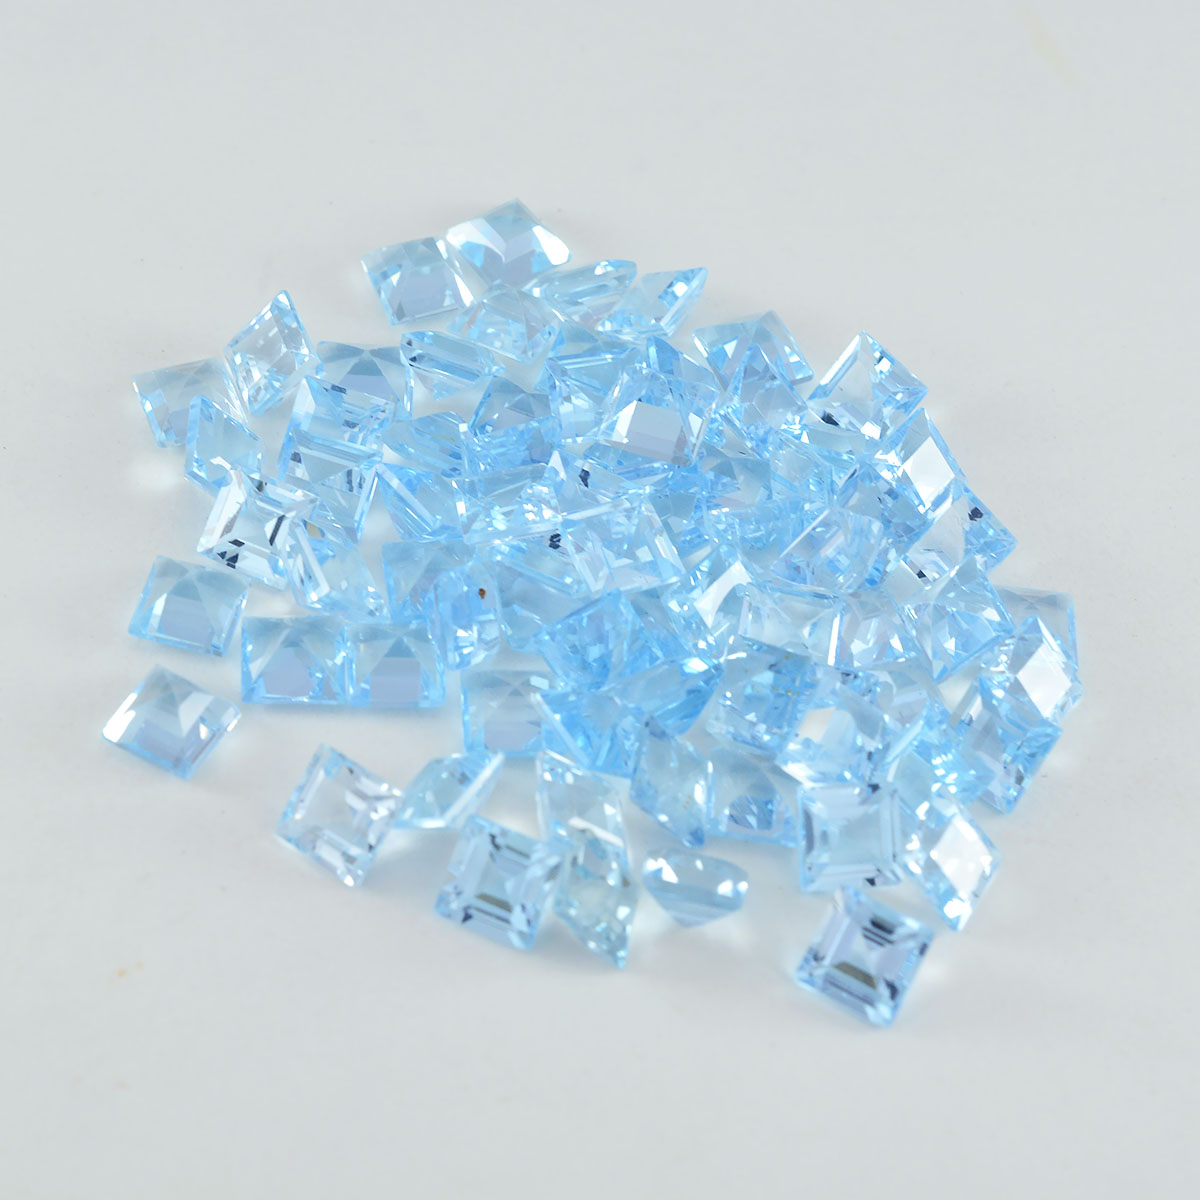 Riyogems 1 Stück echter blauer Topas, facettiert, 4 x 4 mm, quadratische Form, A1-Qualitäts-Edelstein